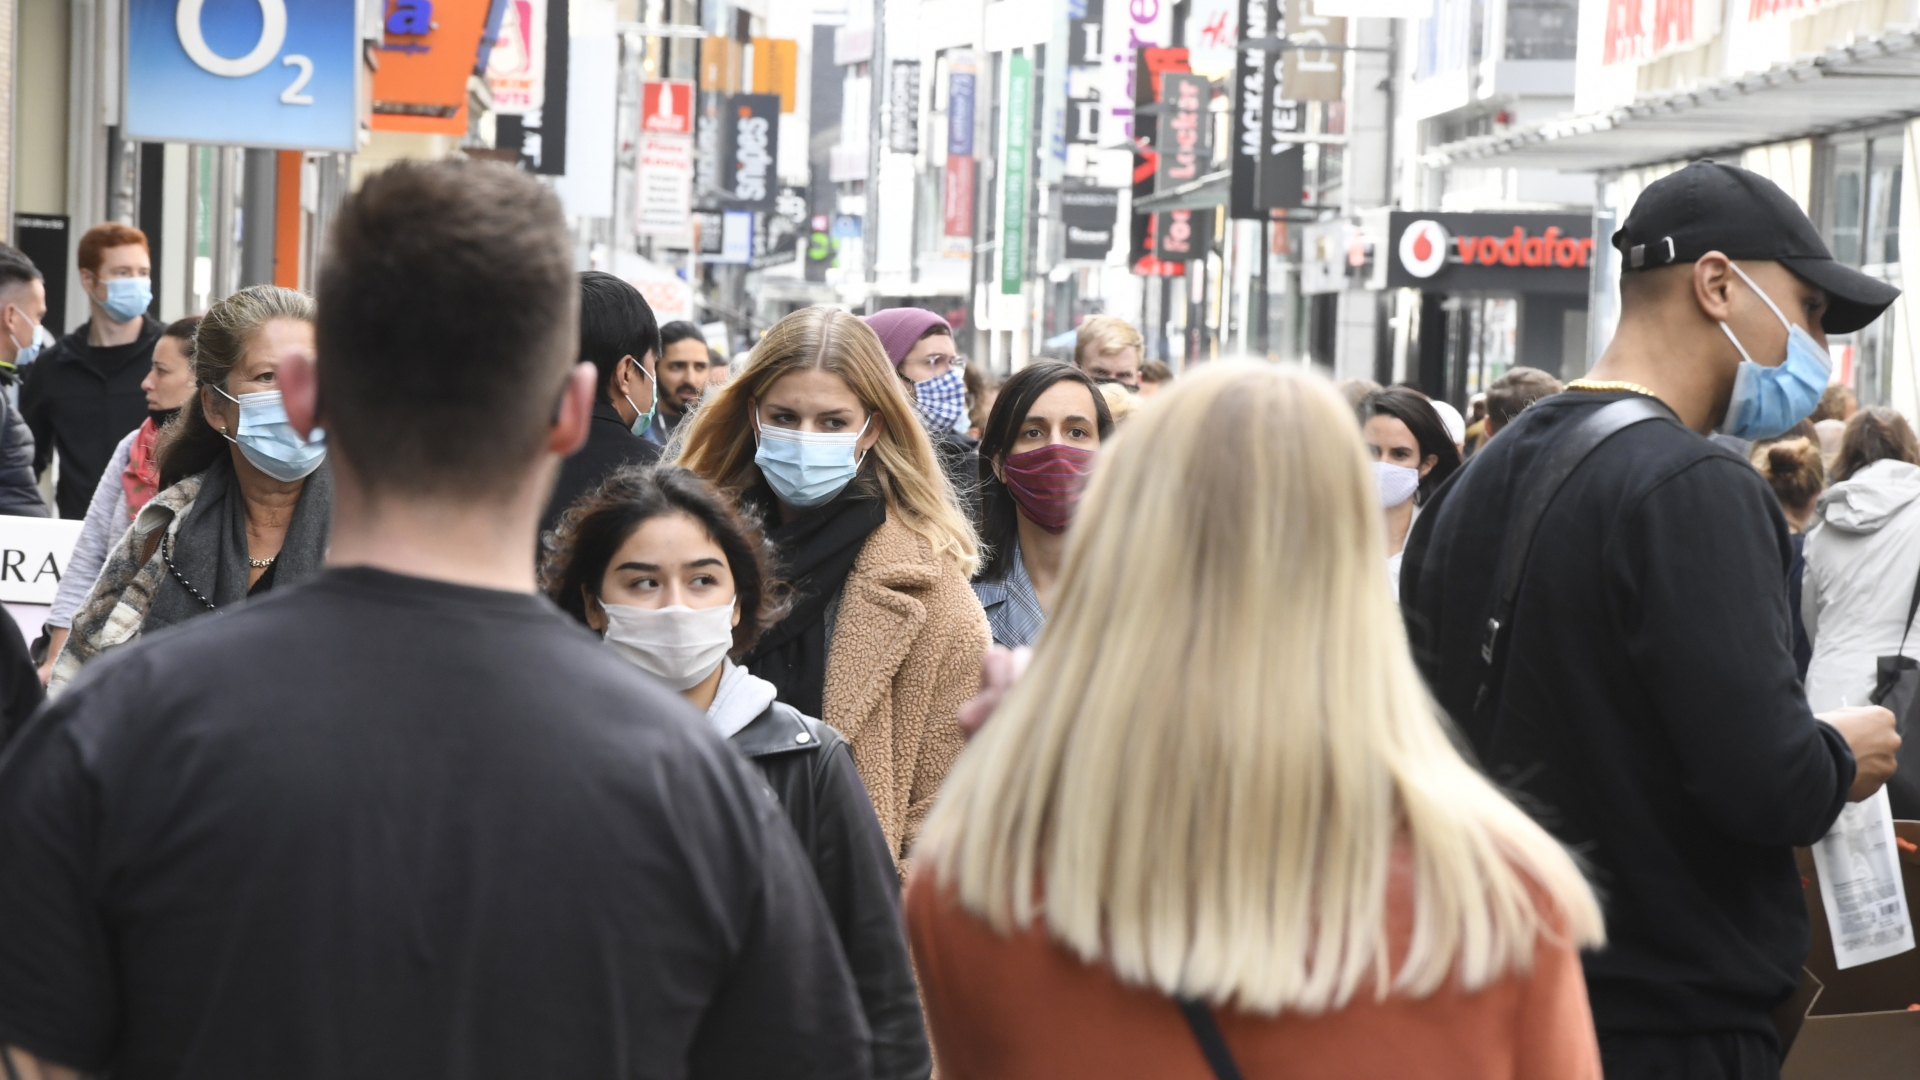 Passanten mit Gesichtsmasken in einer Fußgängerzone in Köln | dpa